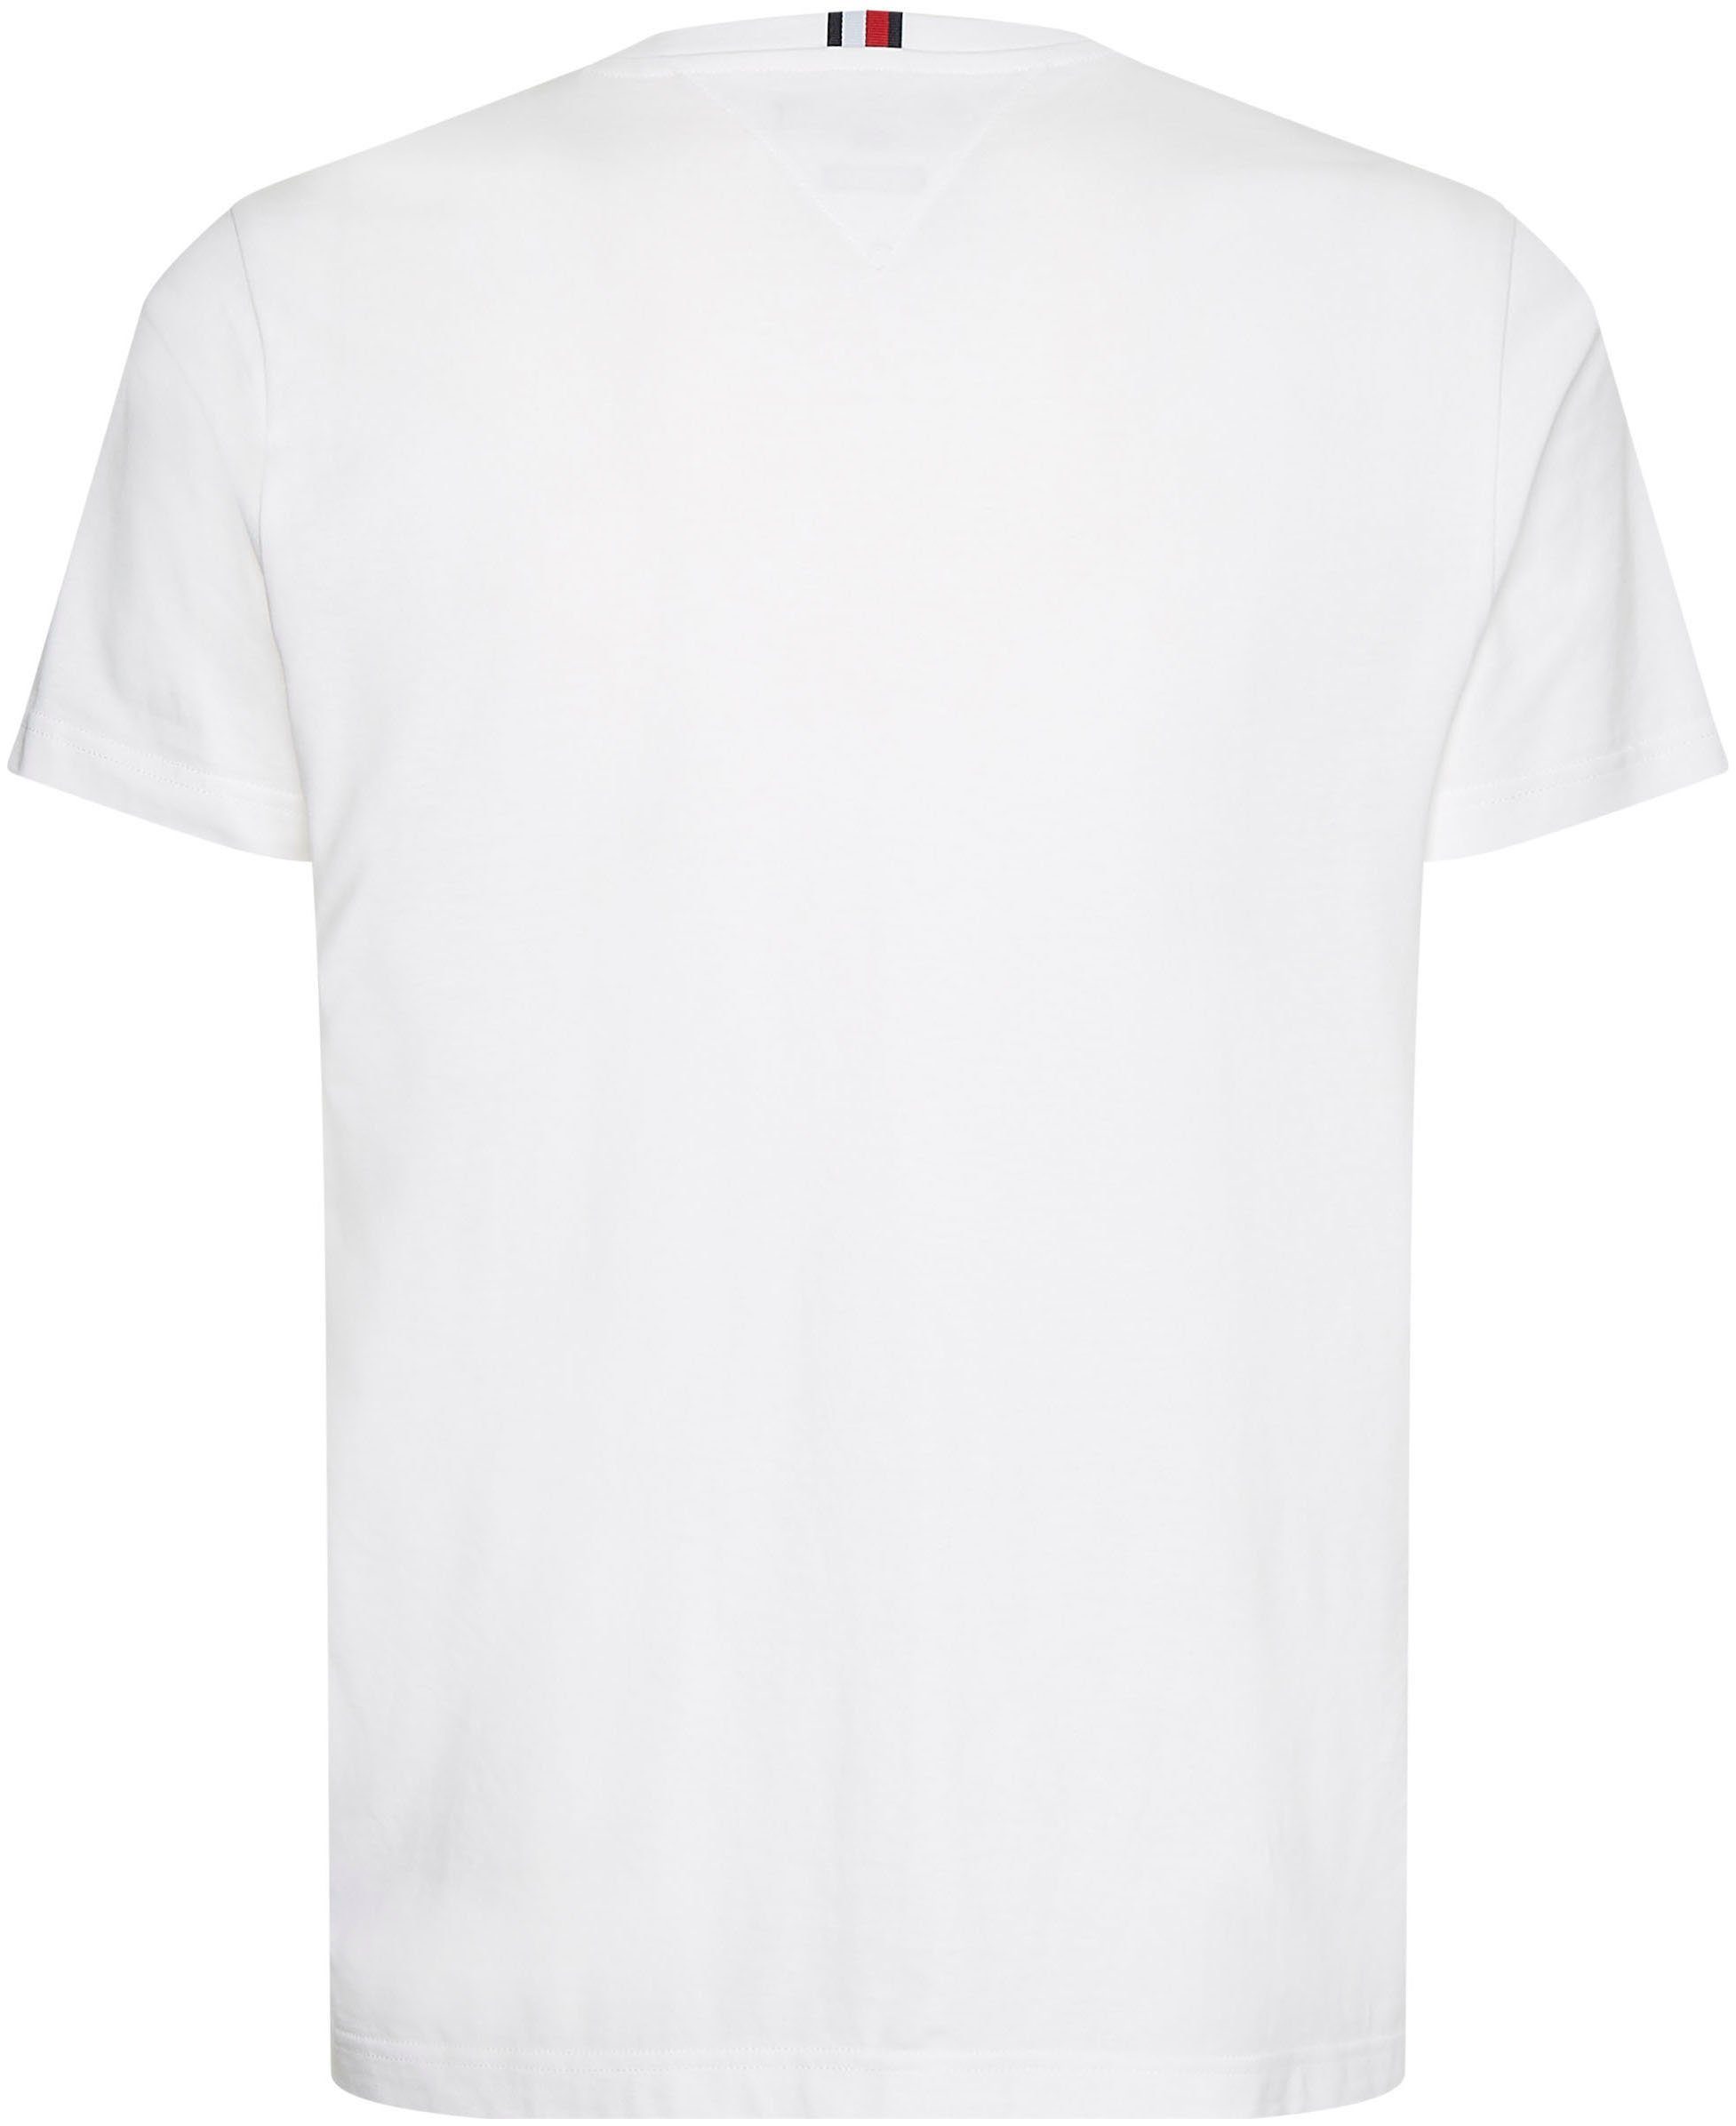 PLACEMENT im TEE Hilfiger Tommy MULTI T-Shirt schlichten weiß Design